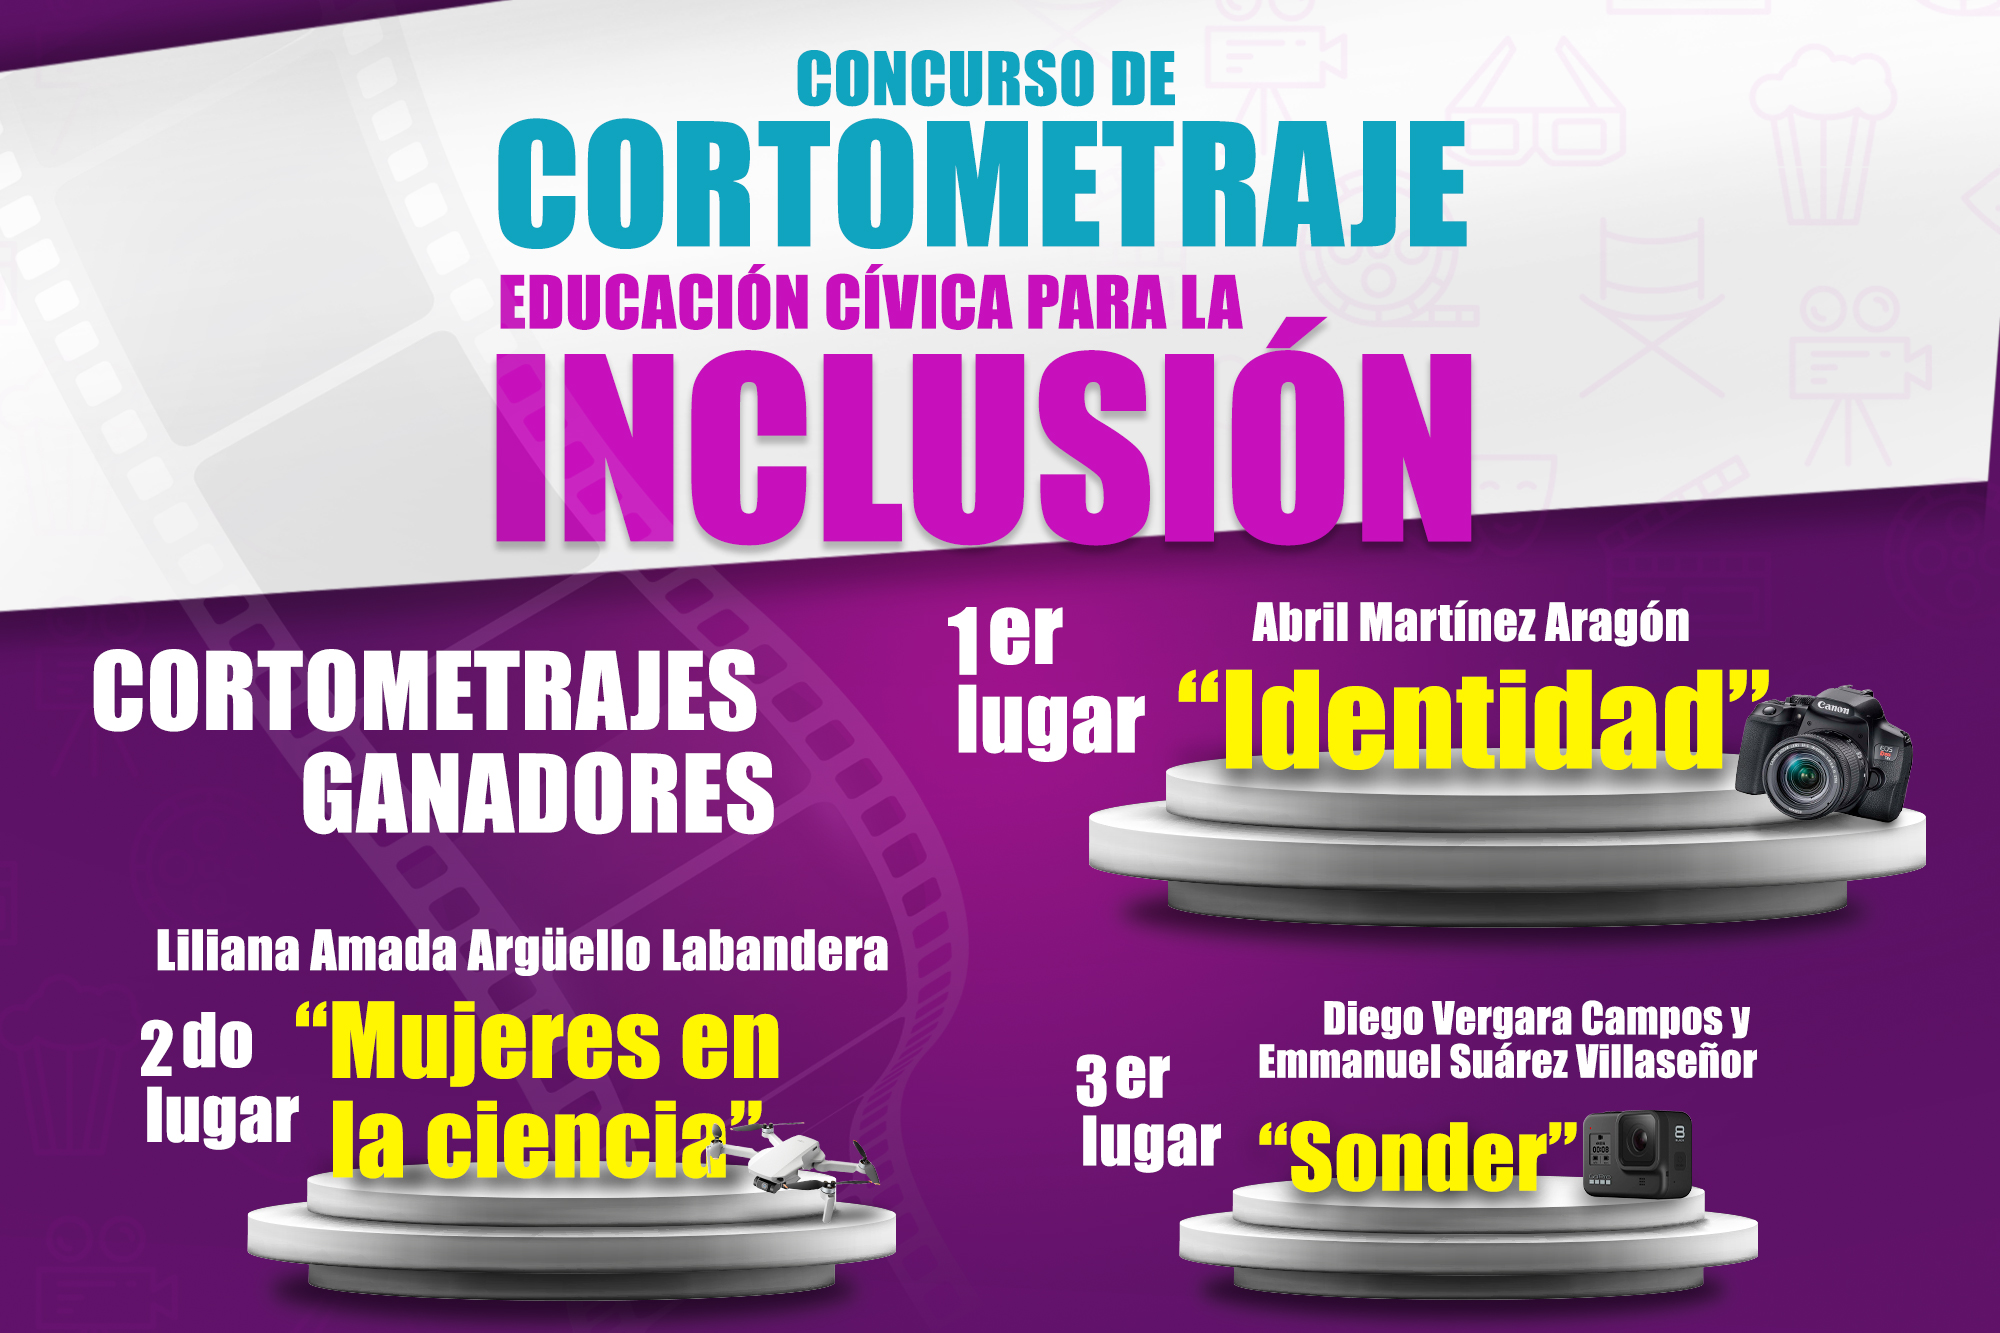 Concurso de Cortometraje Educación Cívica para la Inclusión